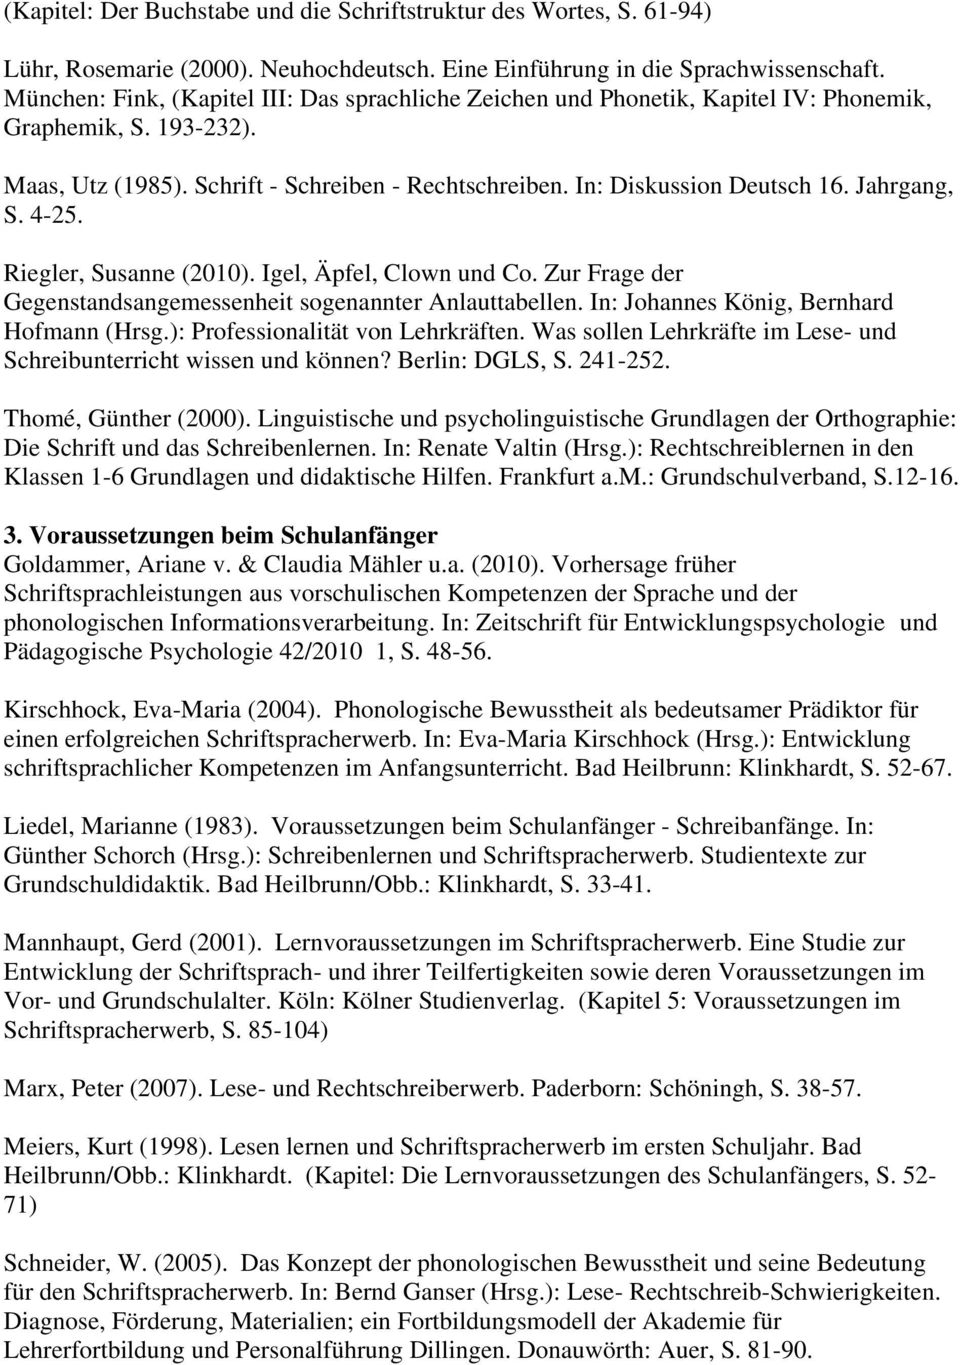 Jahrgang, S. 4-25. Riegler, Susanne (2010). Igel, Äpfel, Clown und Co. Zur Frage der Gegenstandsangemessenheit sogenannter Anlauttabellen. In: Johannes König, Bernhard Hofmann (Hrsg.